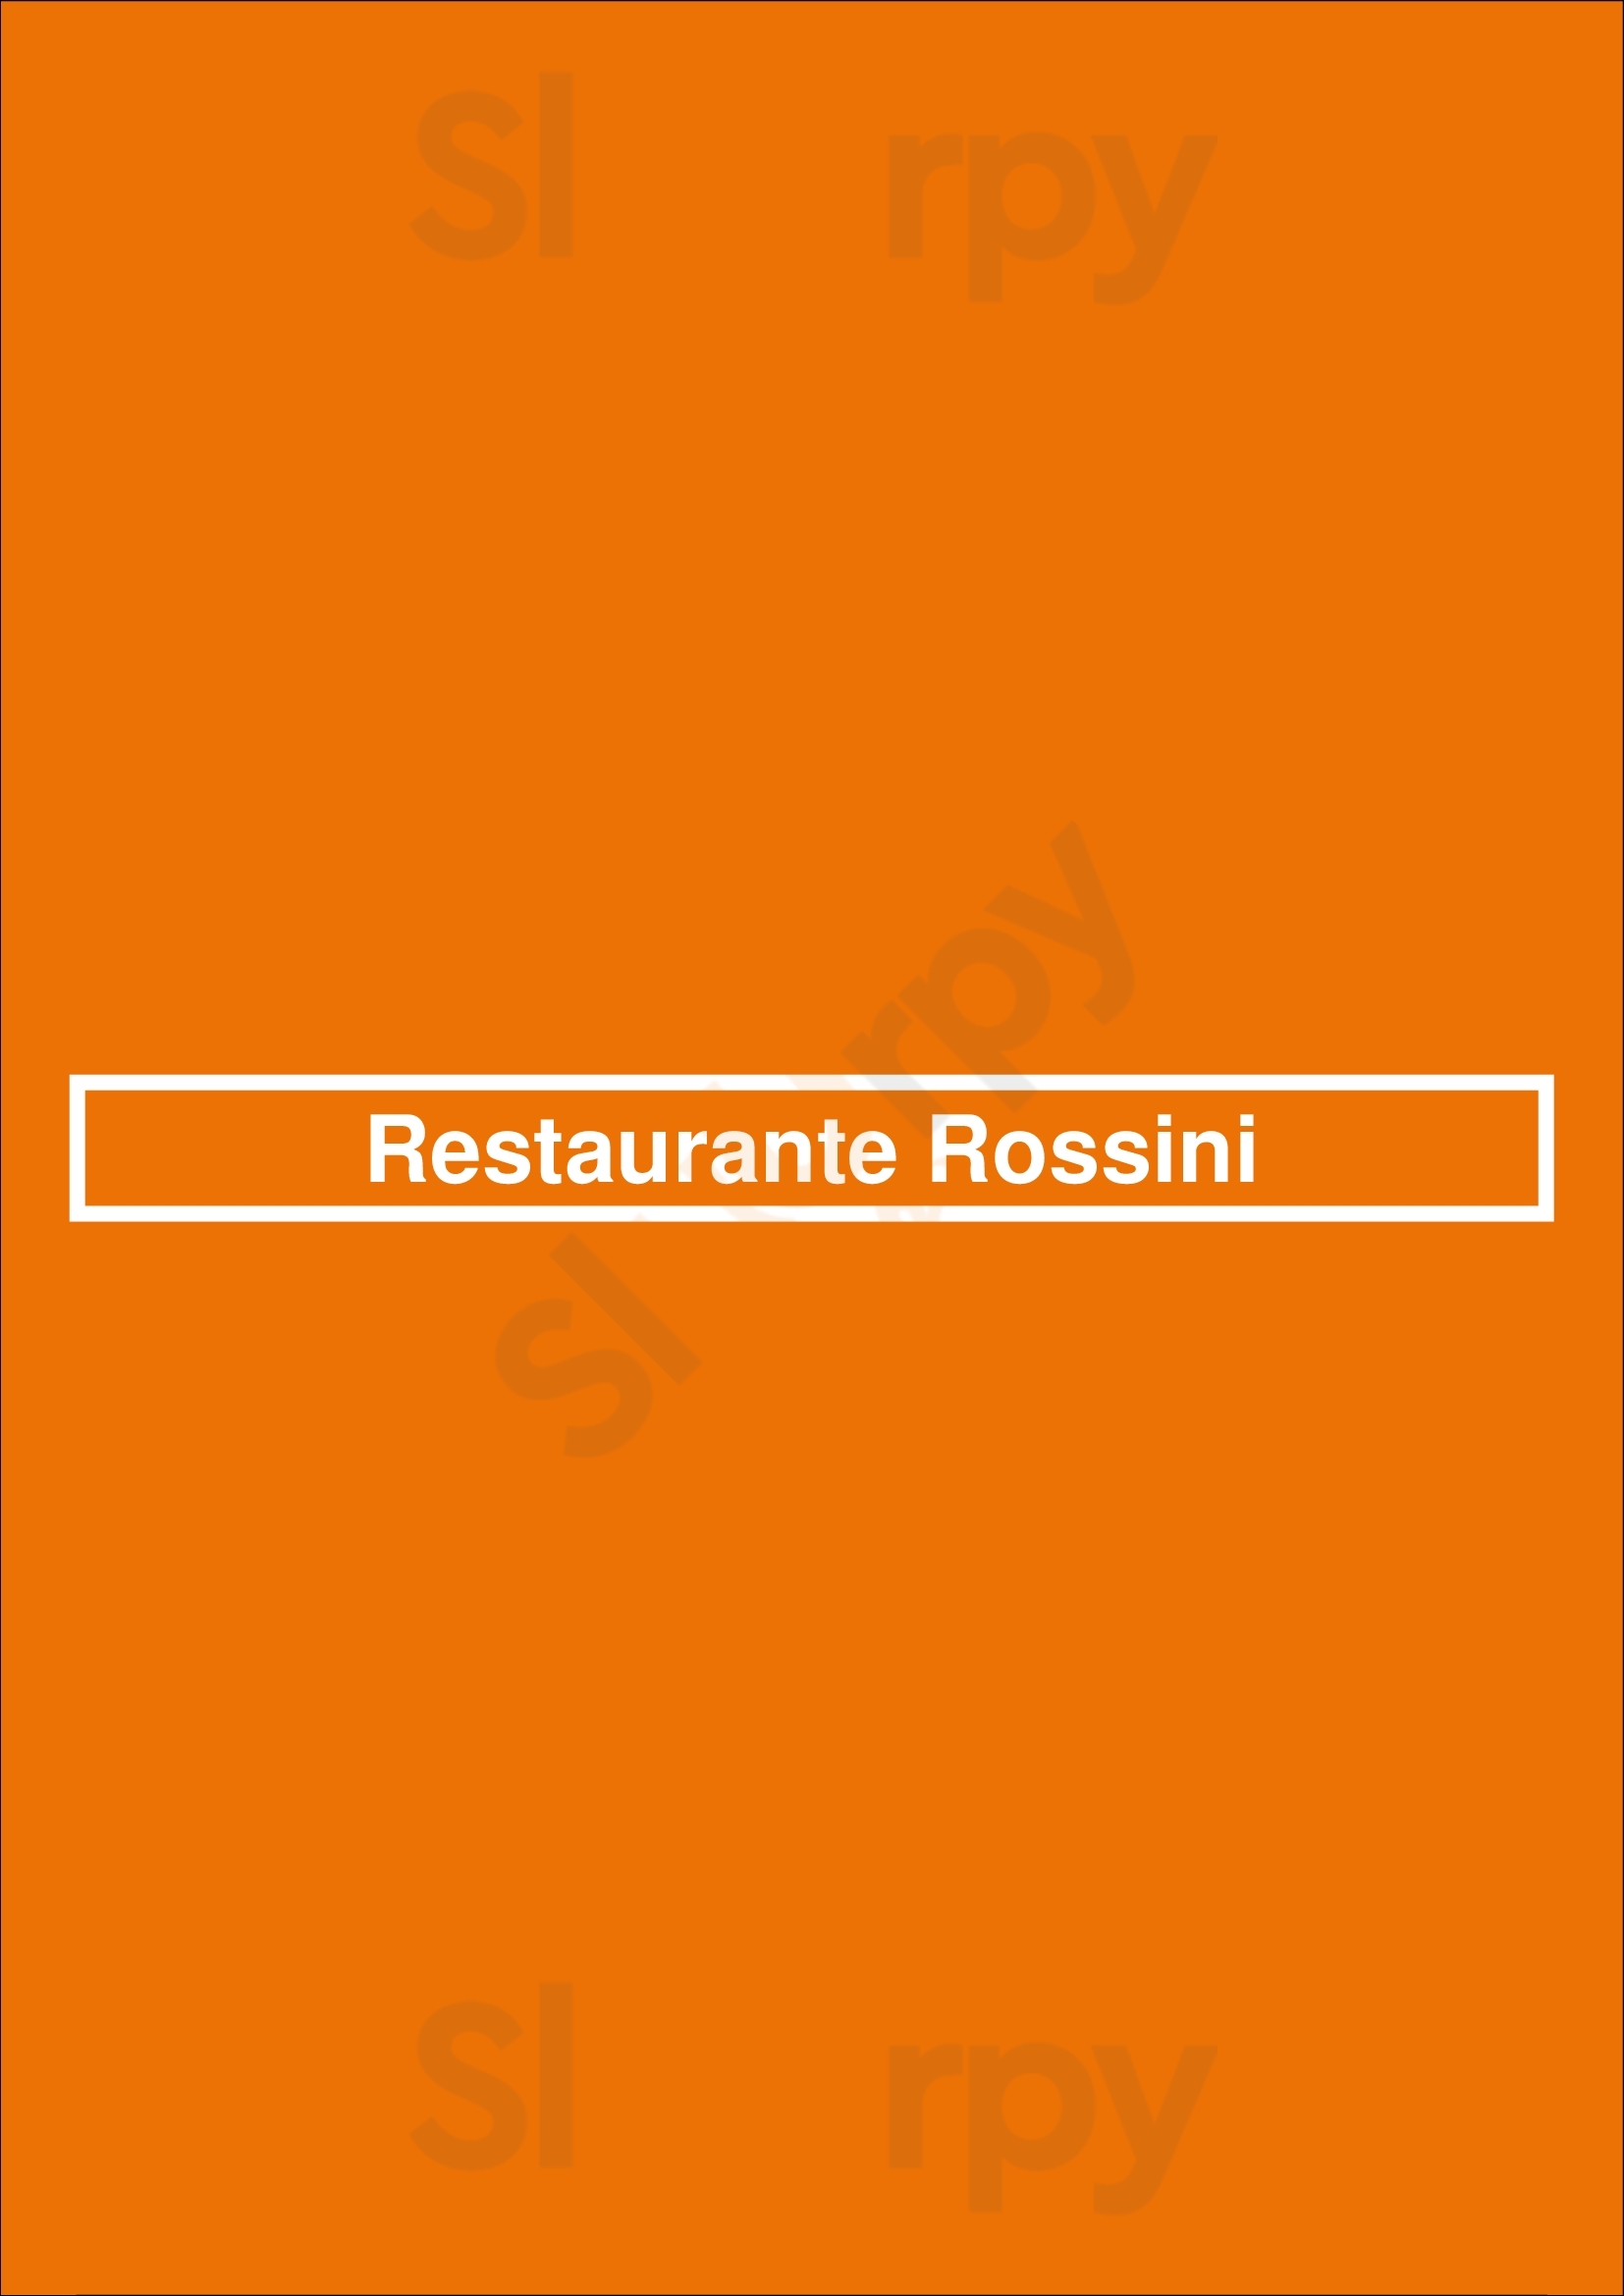 Restaurante Rossini Mallorca Menu - 1